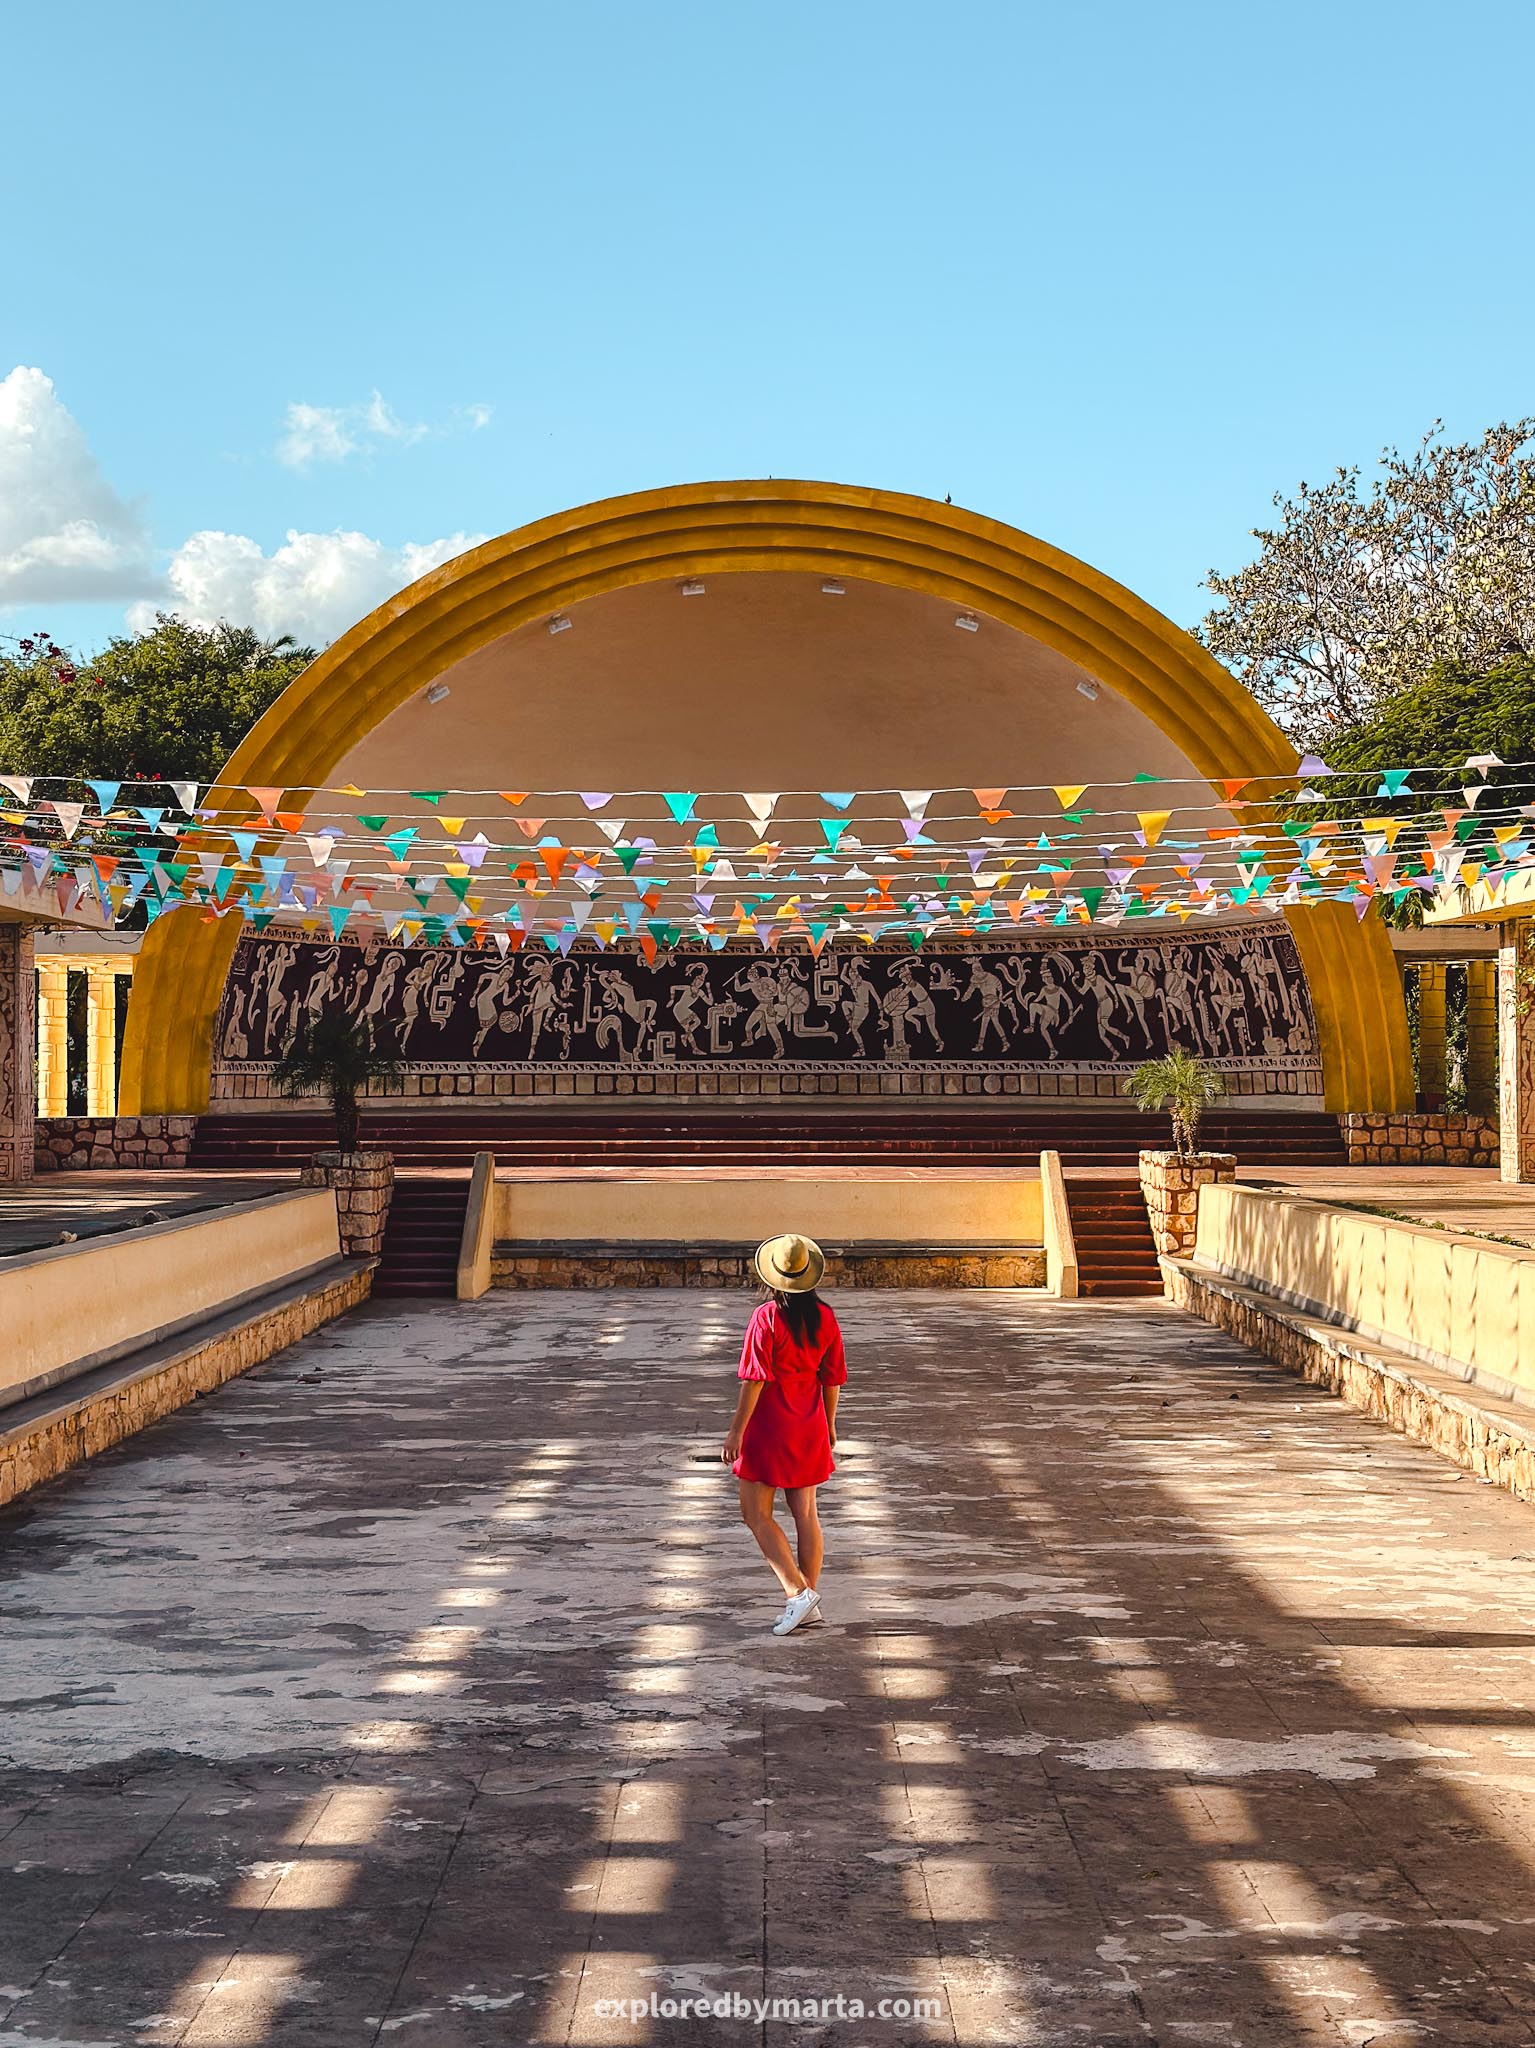 Merida, Mexico - Parque de las Américas - a Mayan inspired concert space in a public park in Merida, Mexico